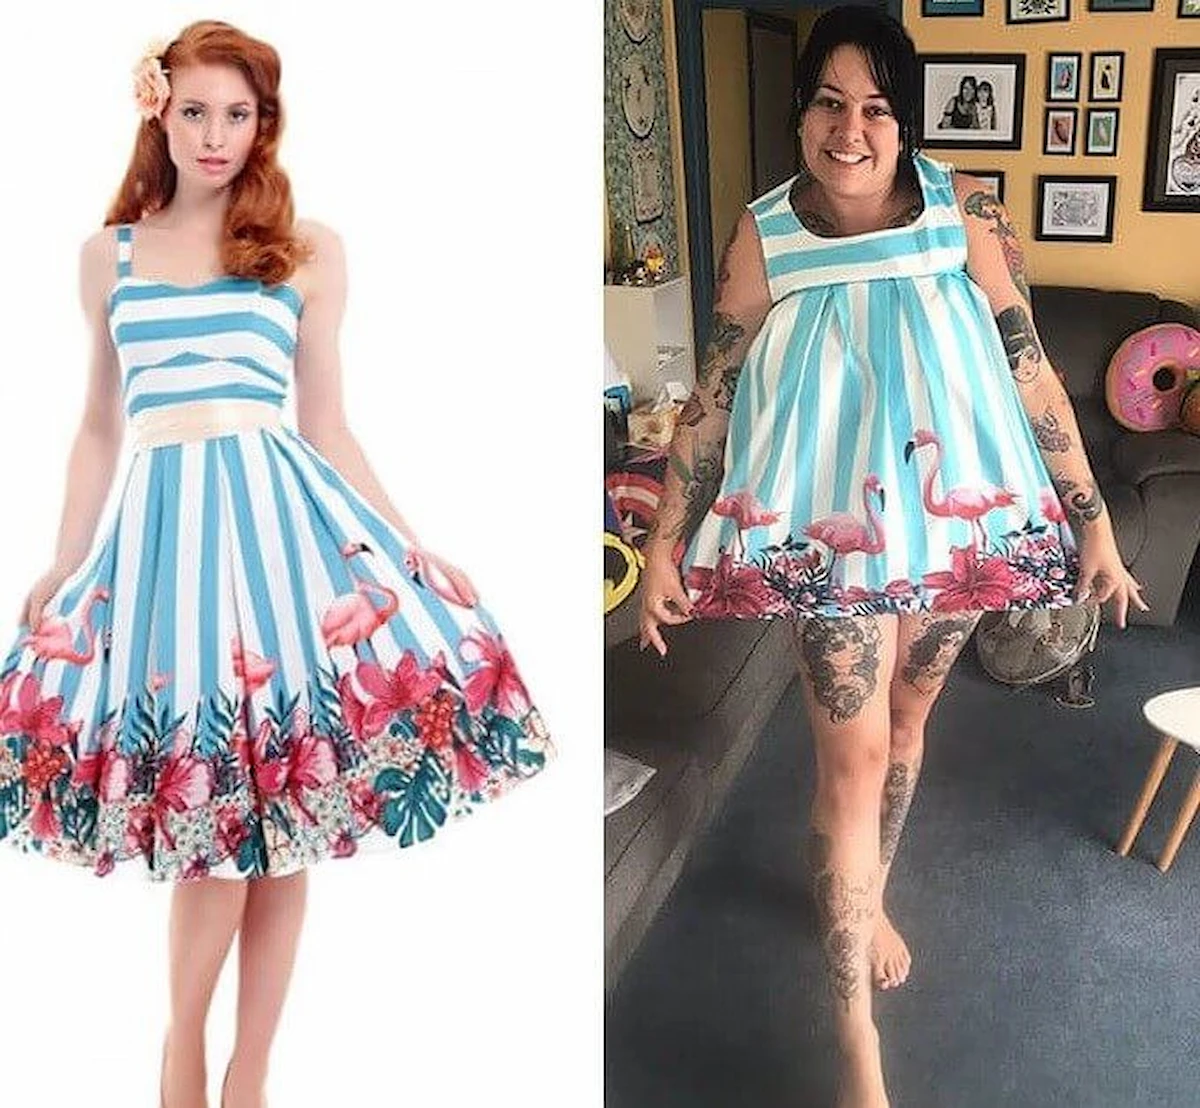 the-magical-shrinking-dress-reddit